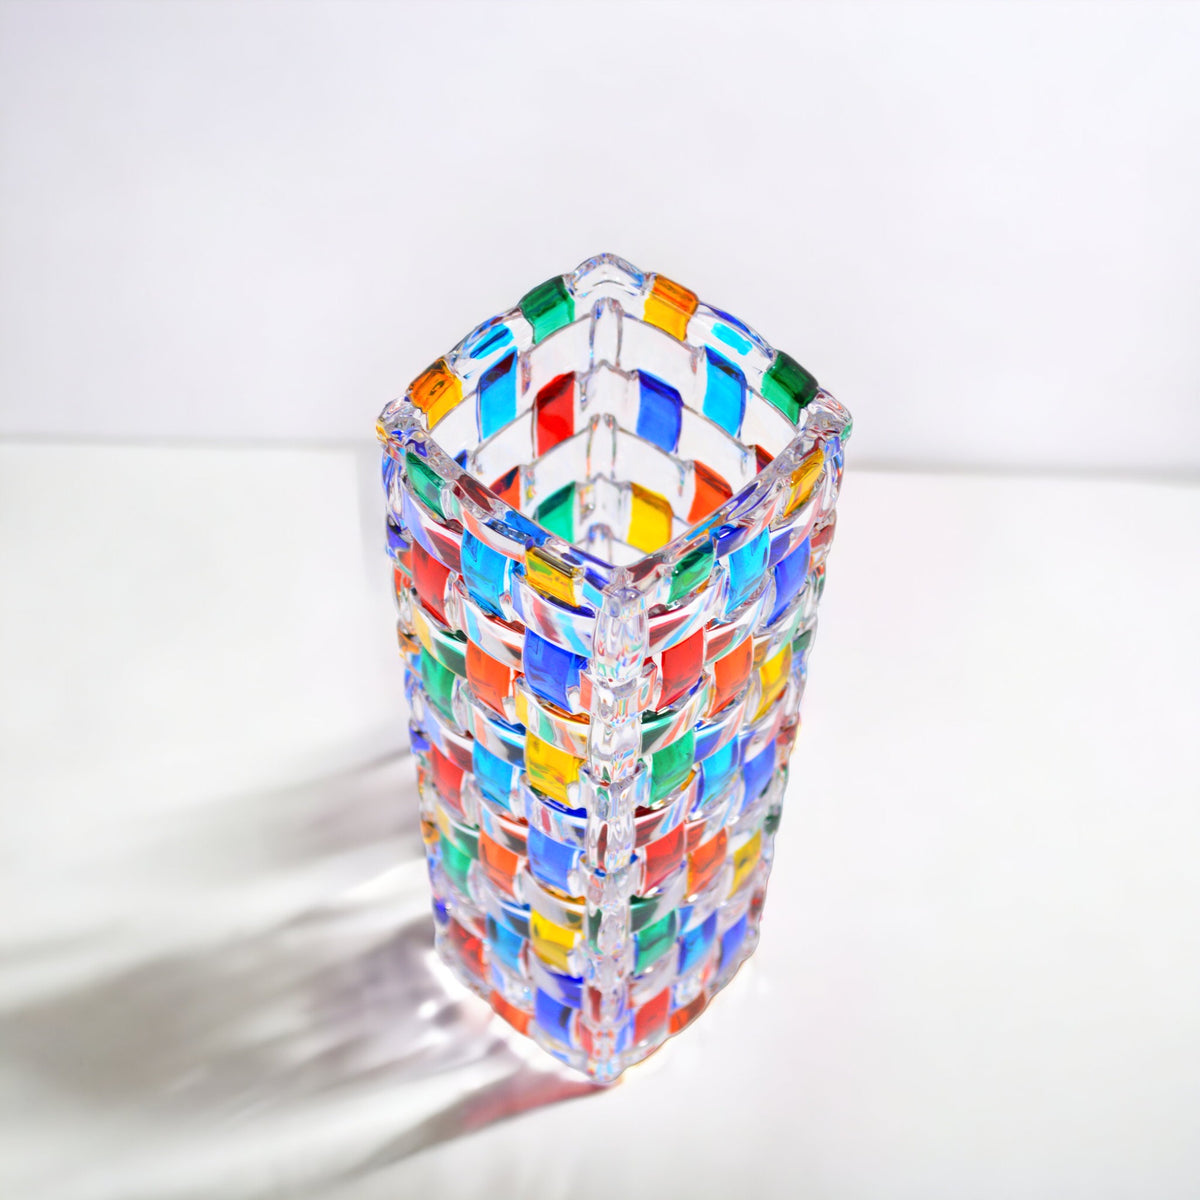 Bossanova Bud Vase, Hand Painted Italian Crystal, Made in Italy - My Italian Decor